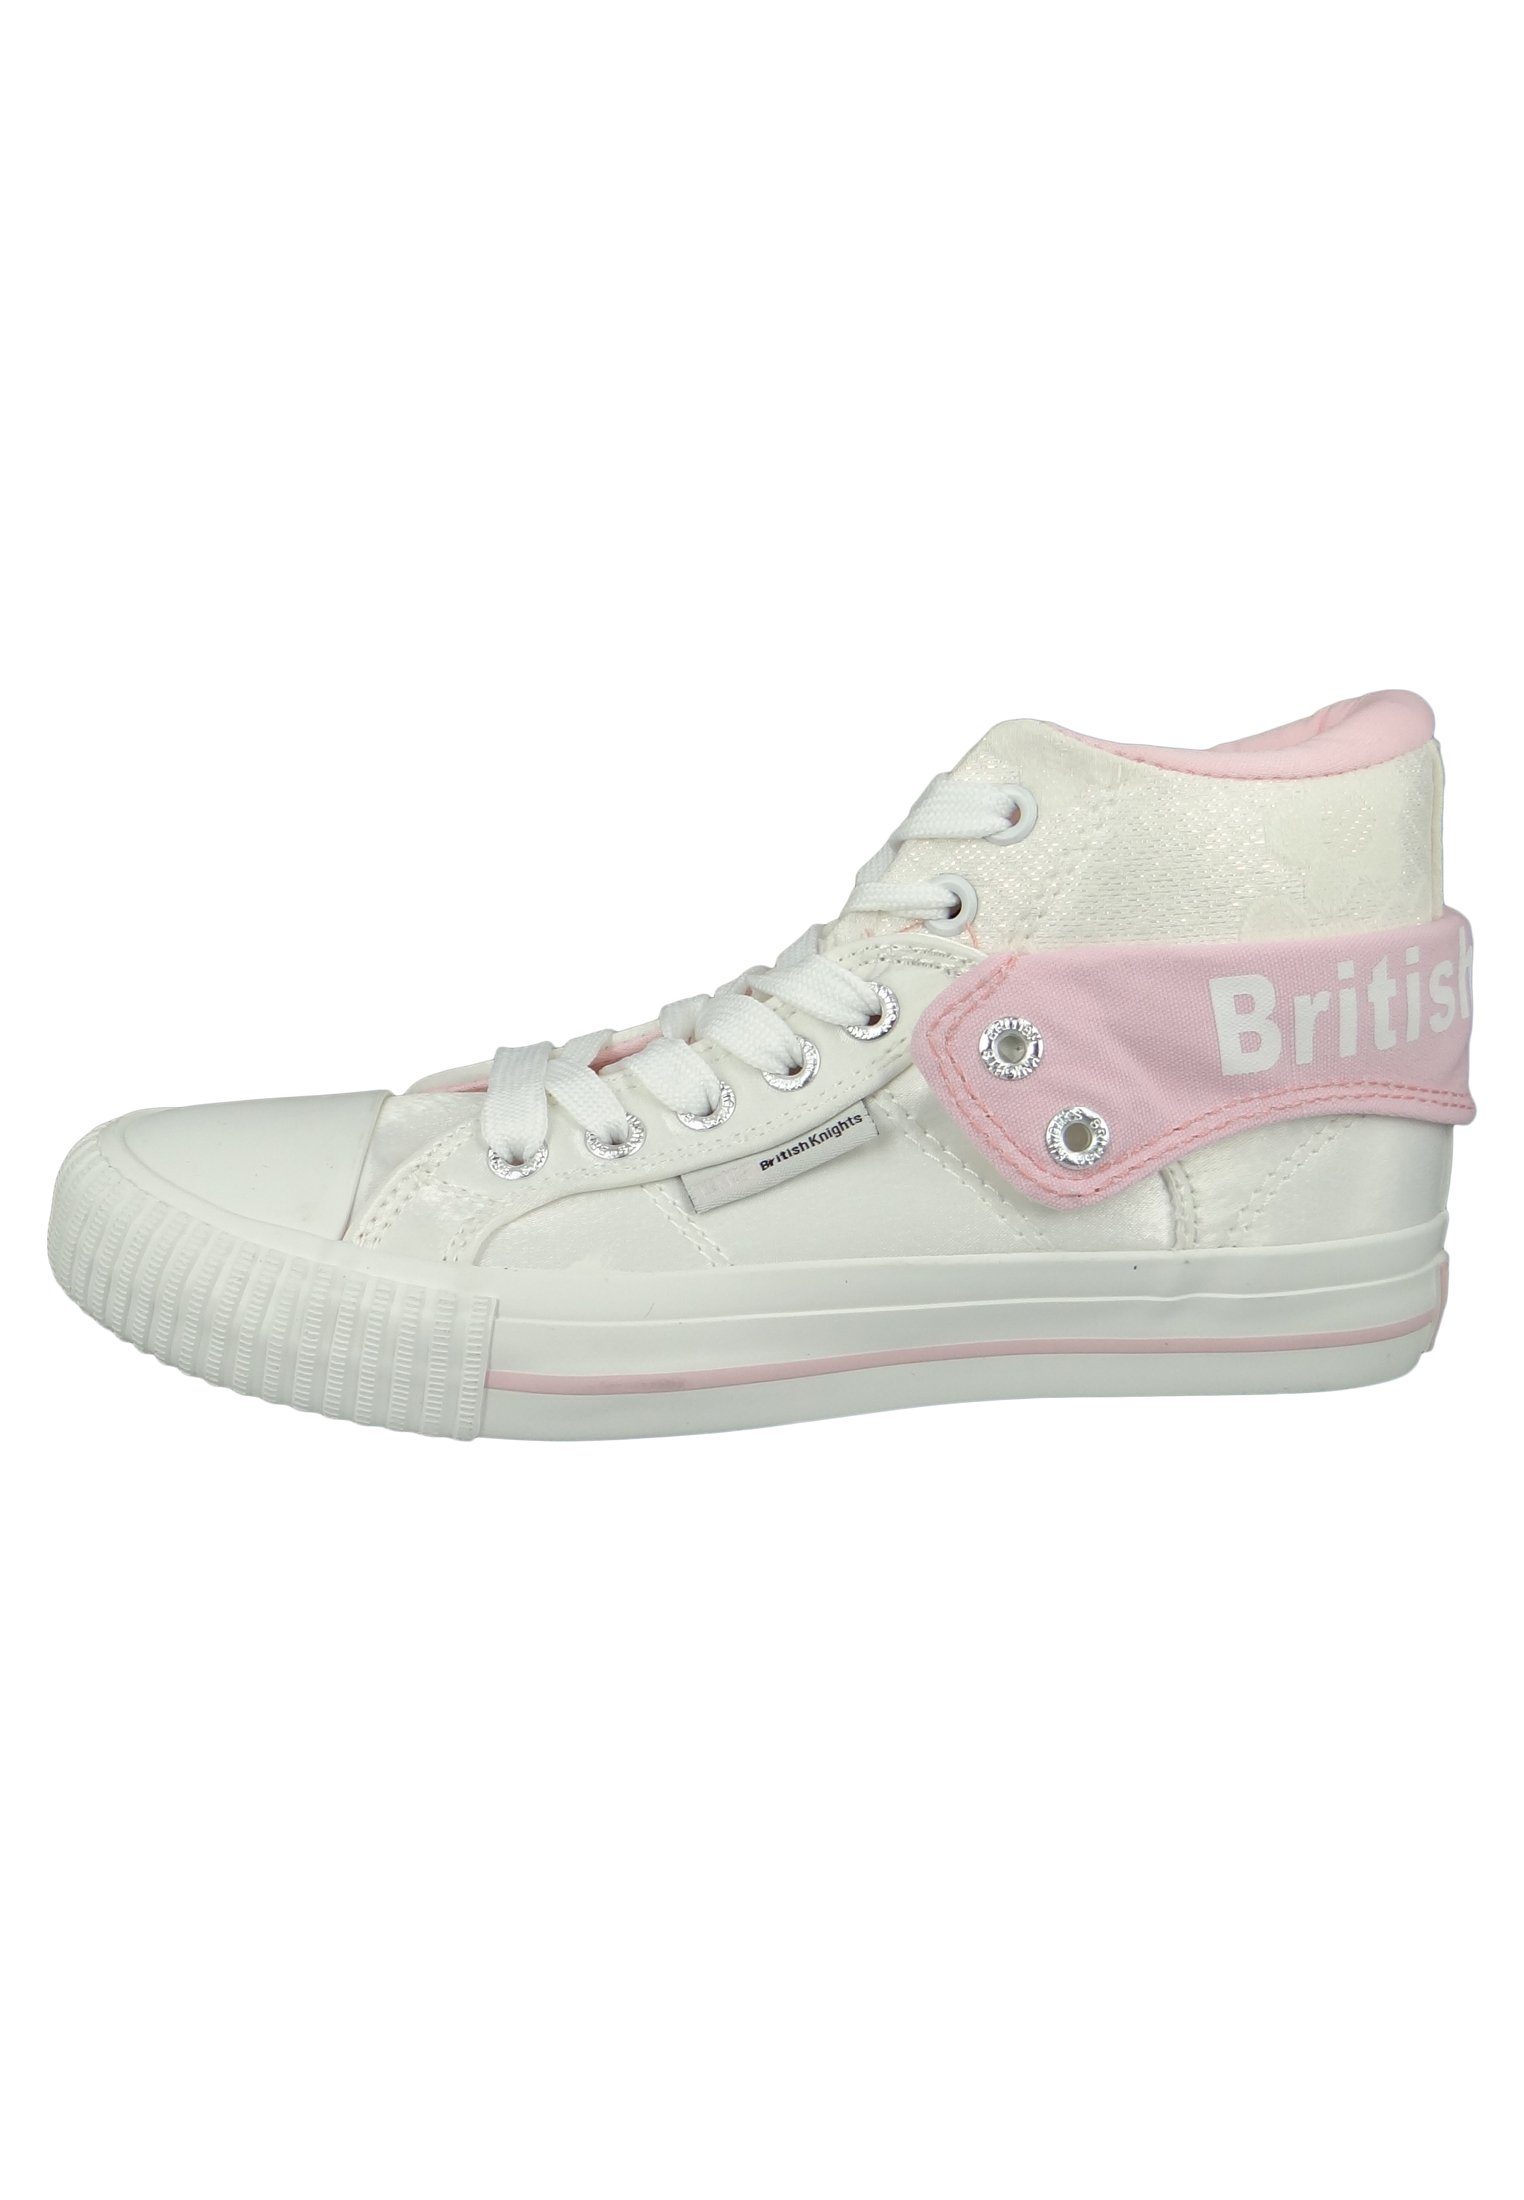 White Knights Pink Flower B43-3709-02 Sneaker British Roco